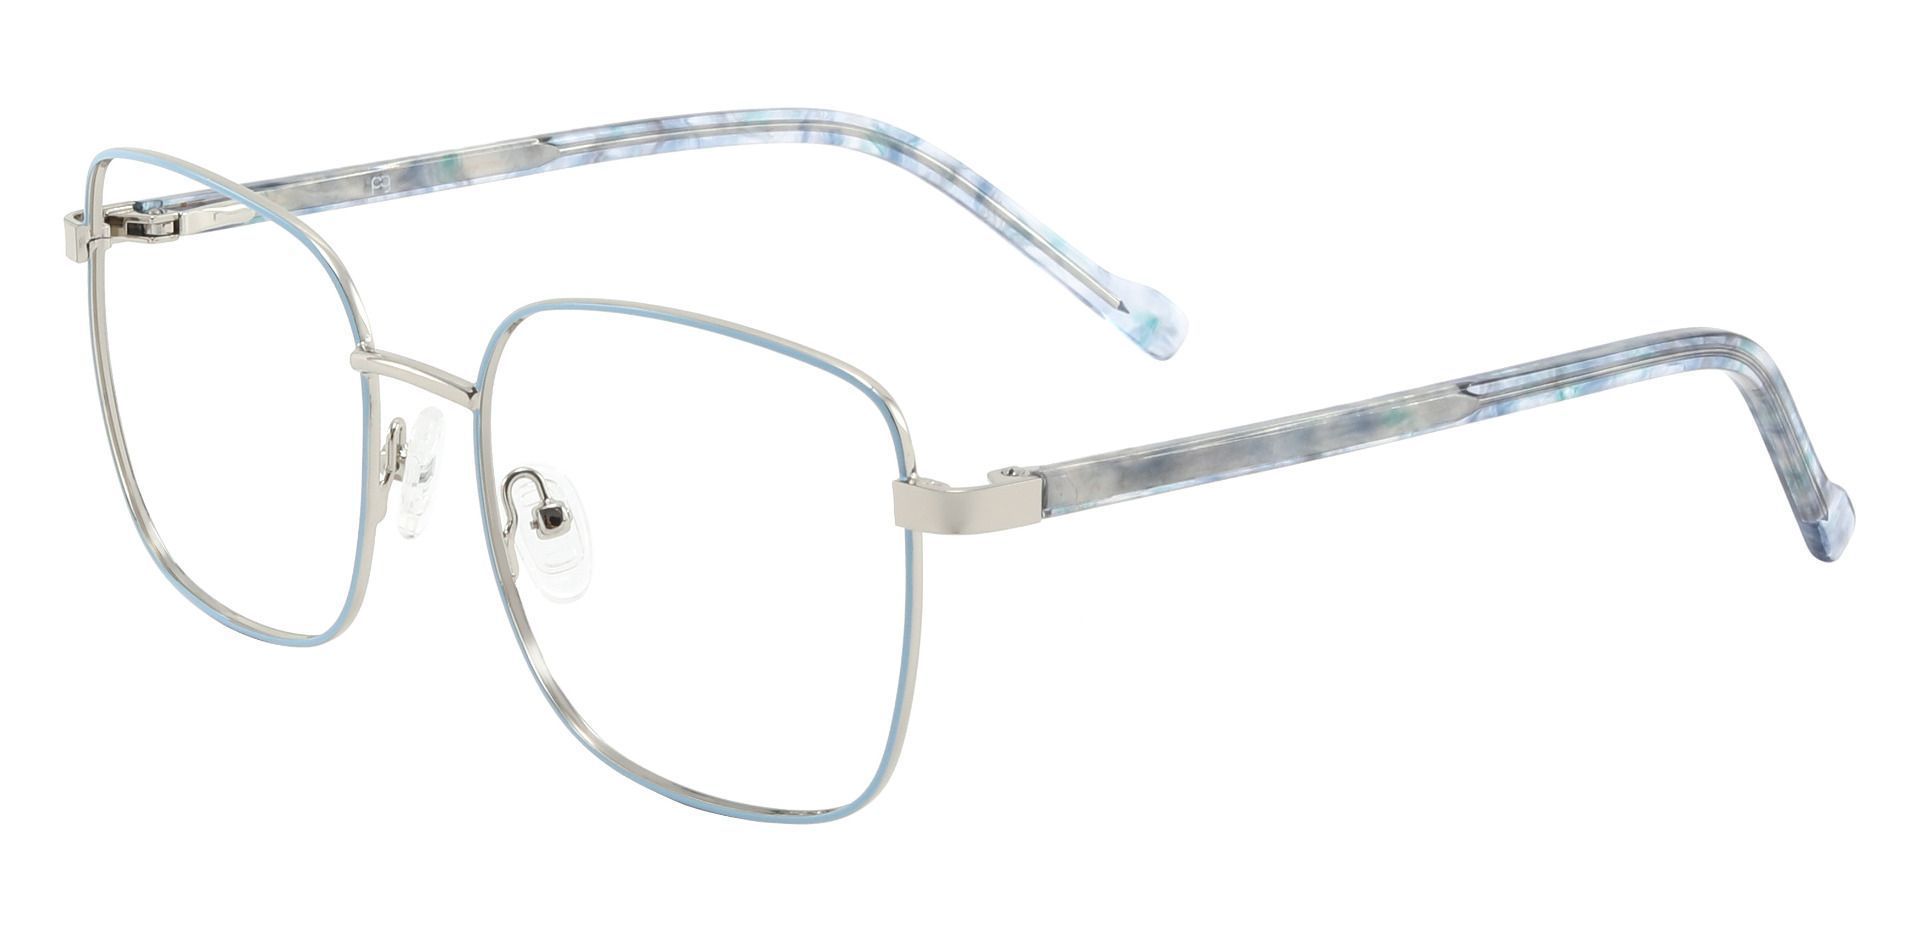 Sunrise Square Prescription Glasses - Blue